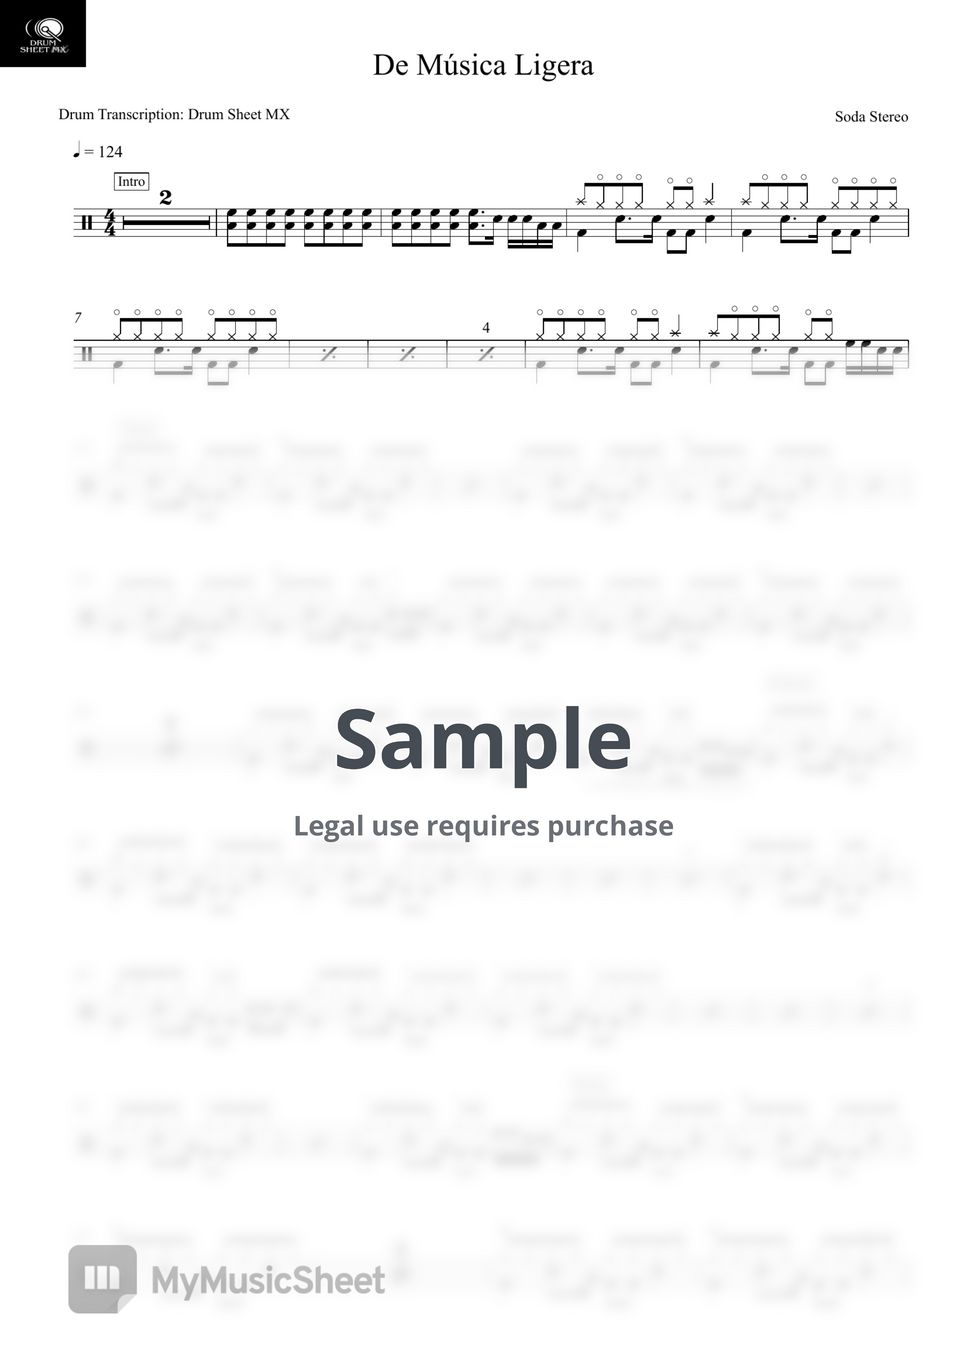 Soda Stereo - De Música Ligera by Drum Transcription: Drum Sheet MX